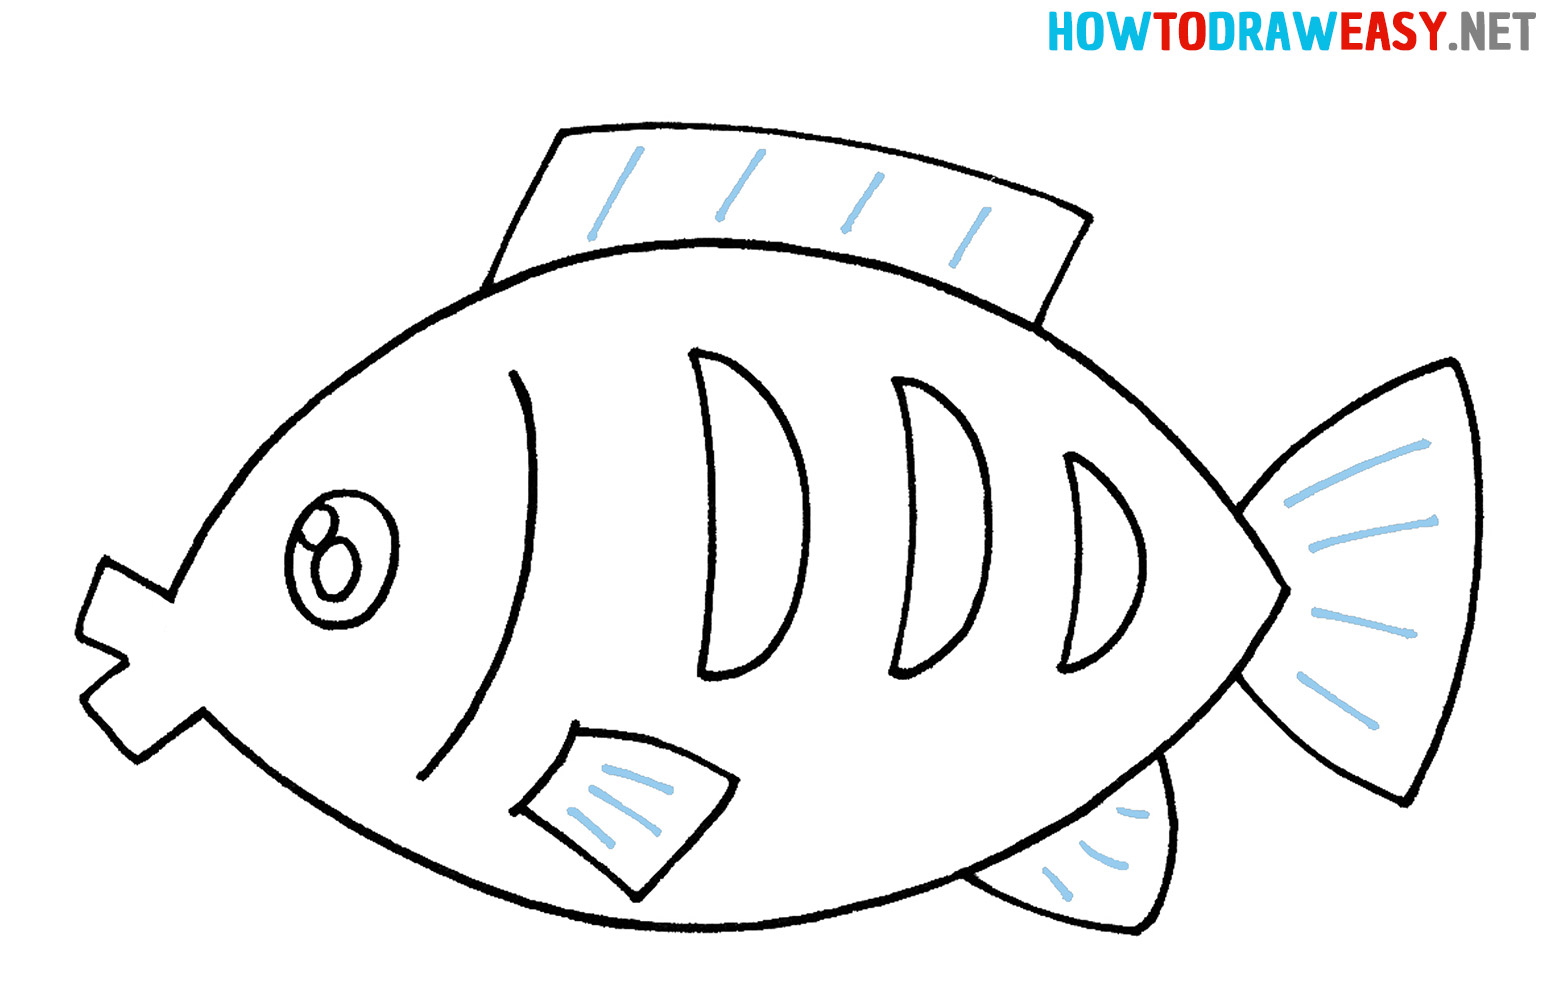 Drawing Fish